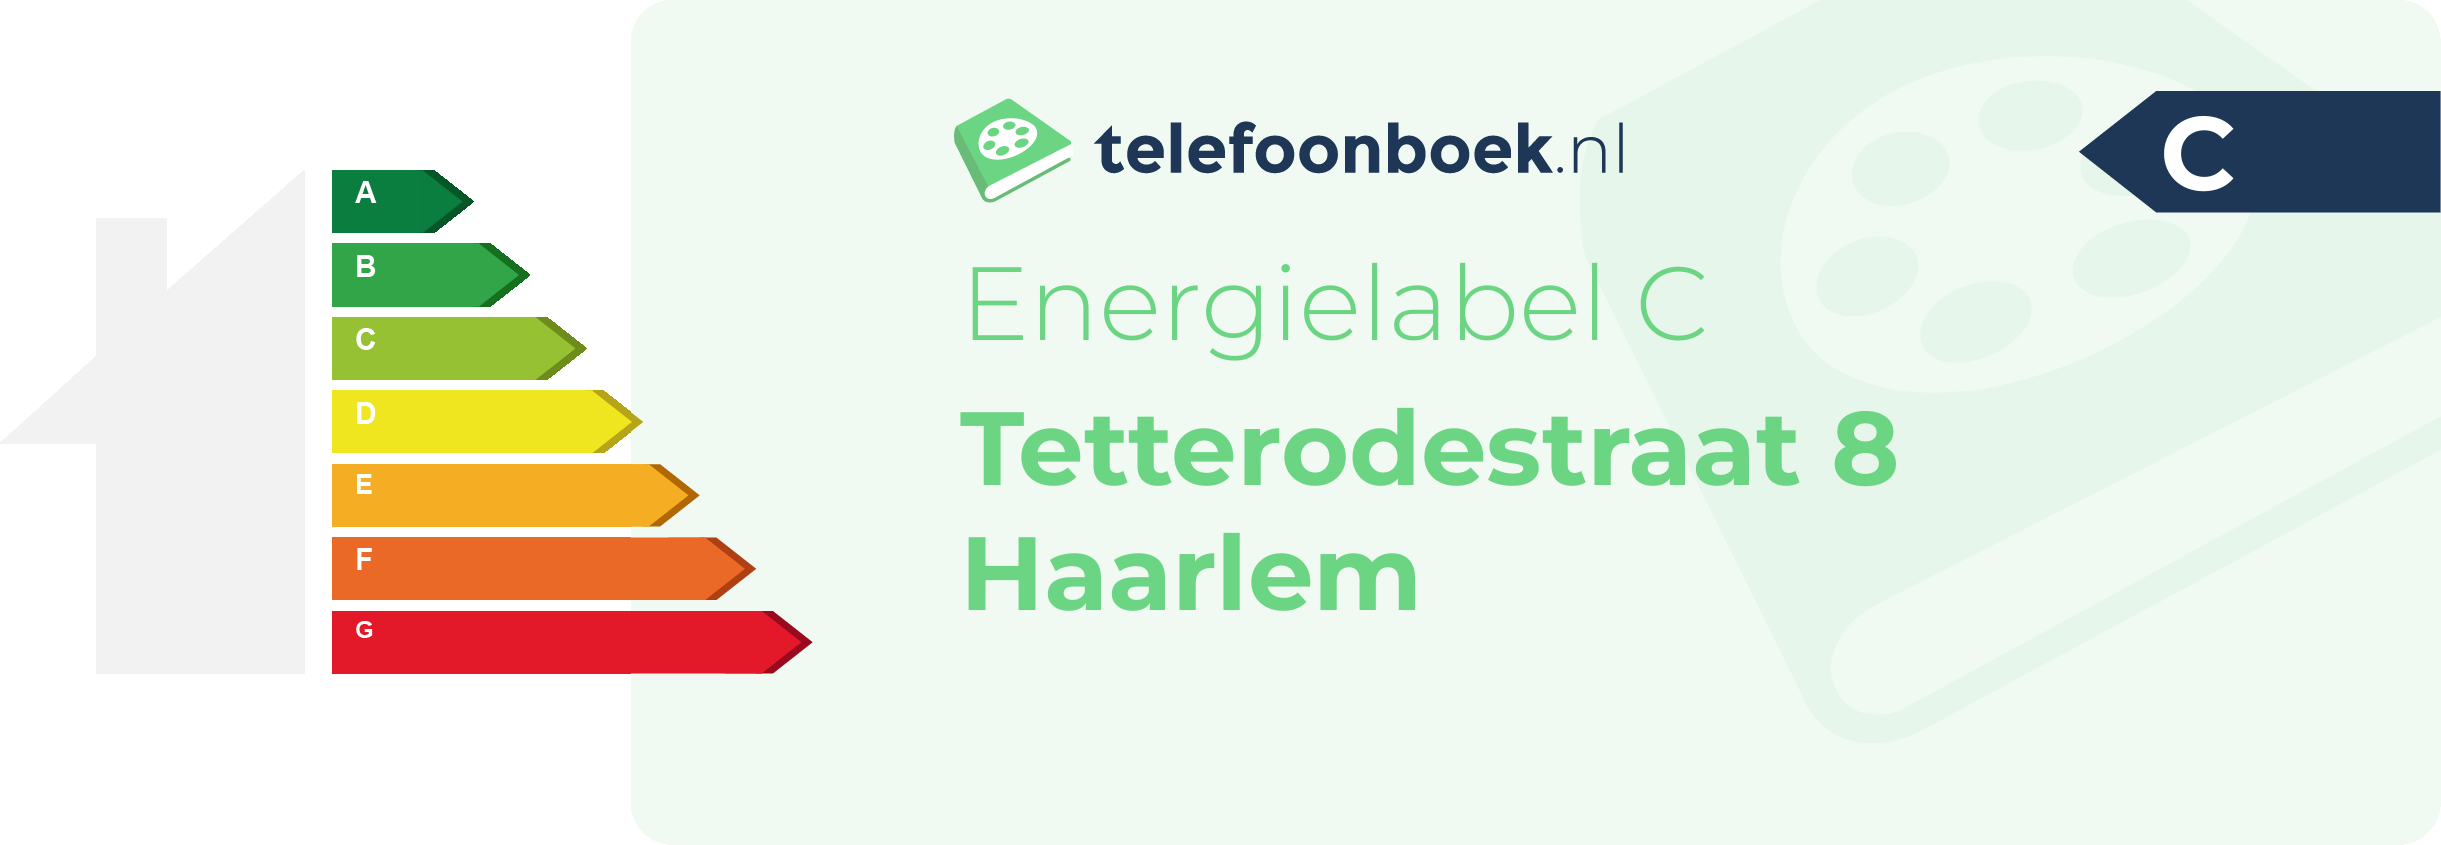 Energielabel Tetterodestraat 8 Haarlem